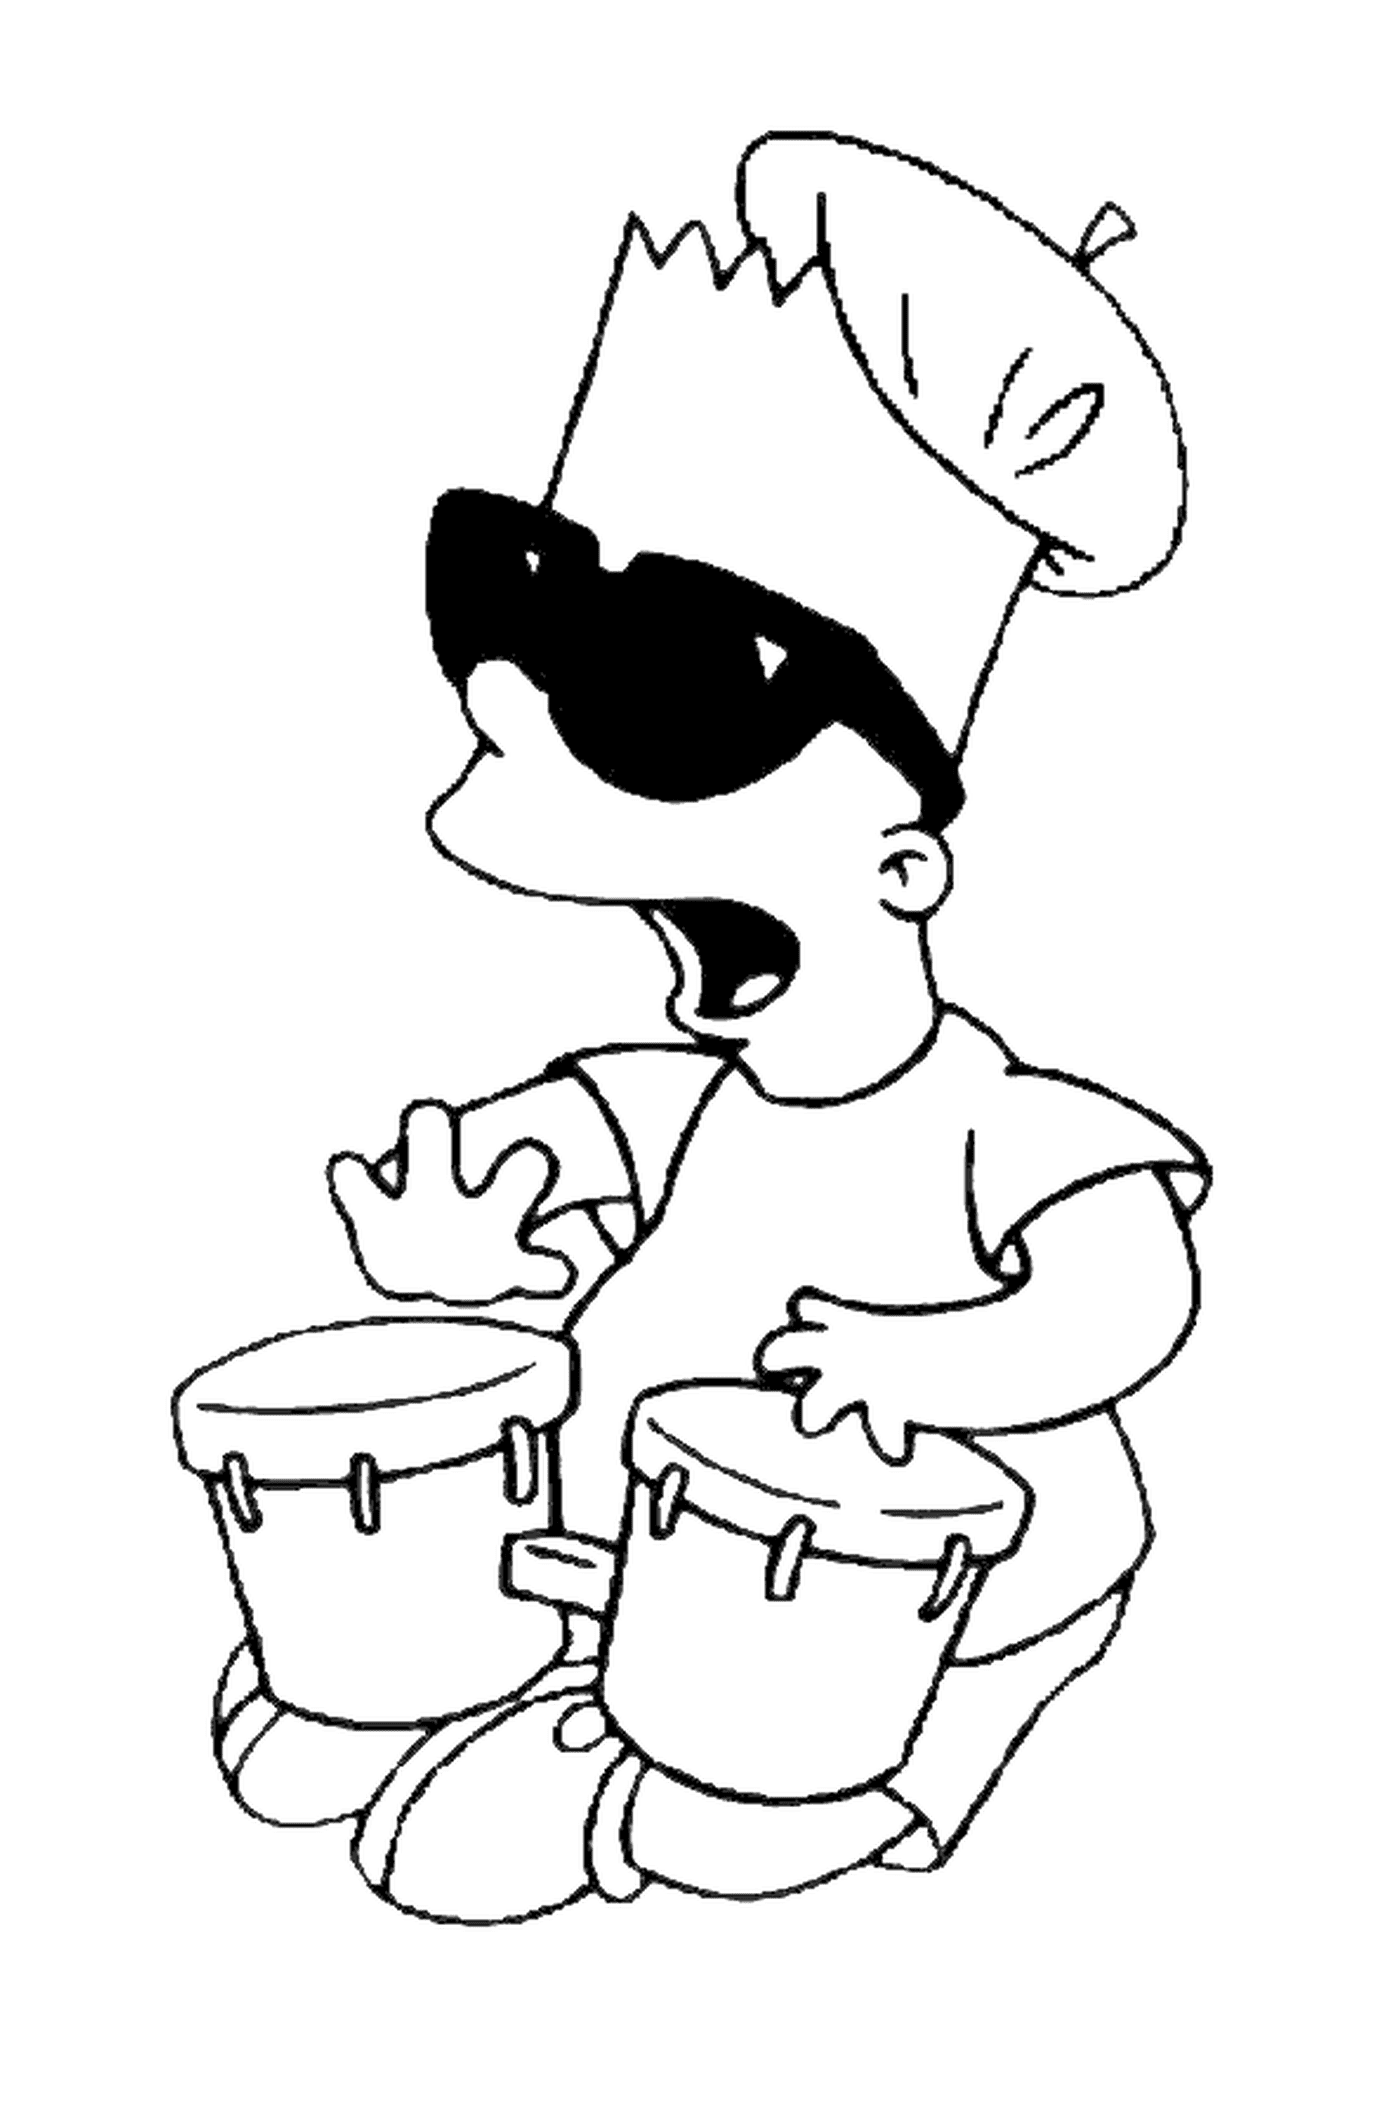  Барт делает музыку с там-тамами, никто не играет на инструменте 